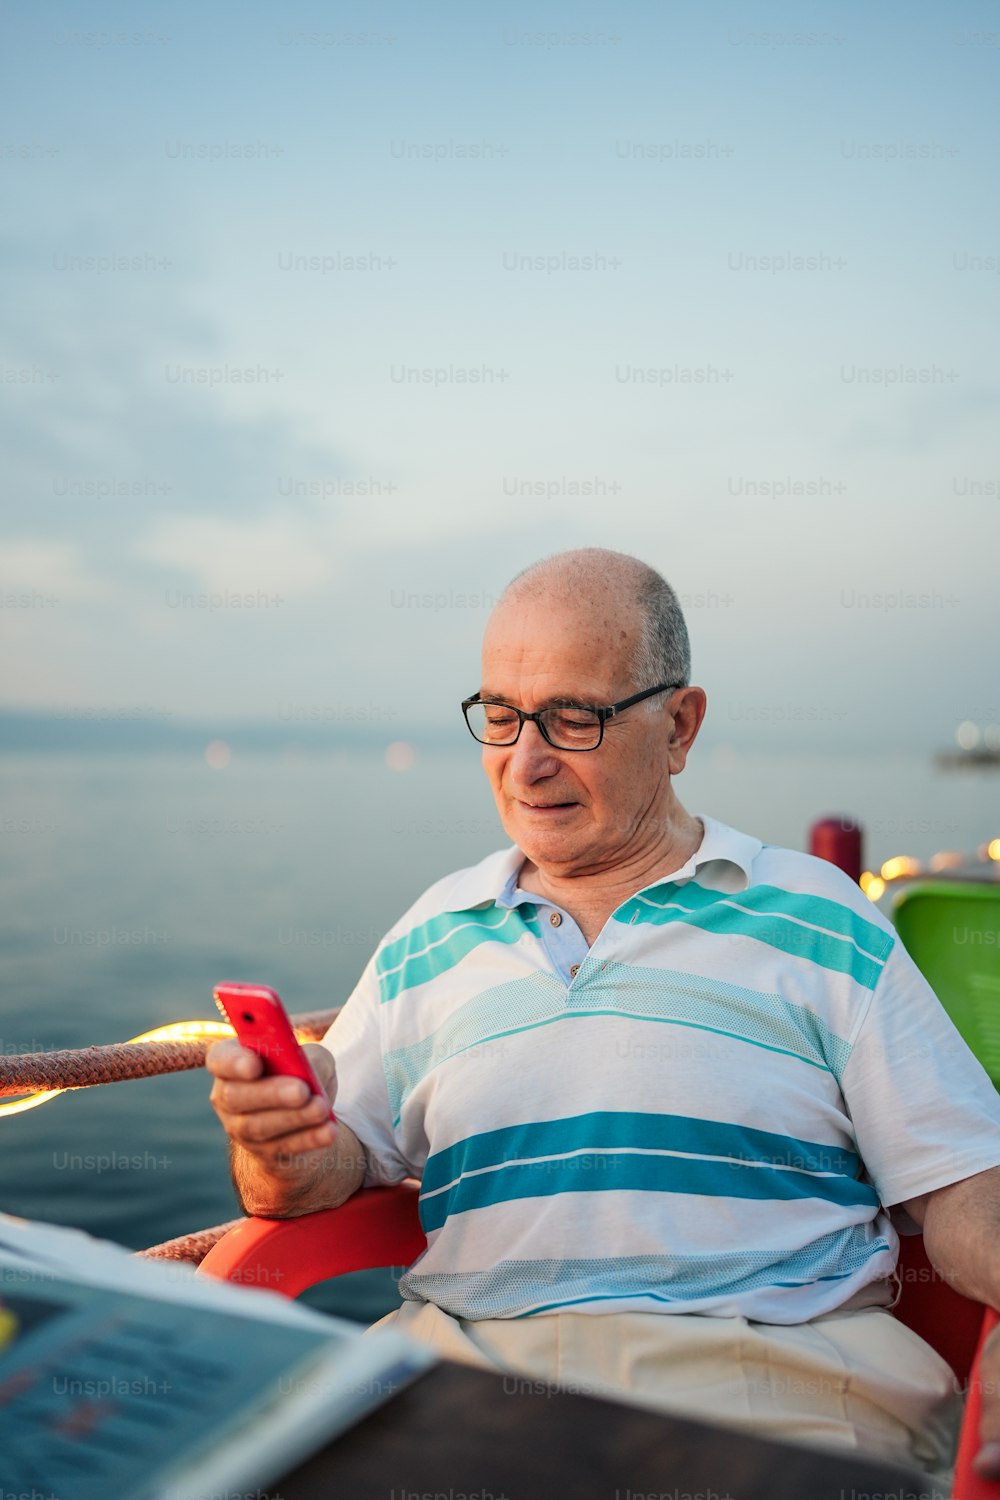 Un homme assis sur une chaise regardant un téléphone portable